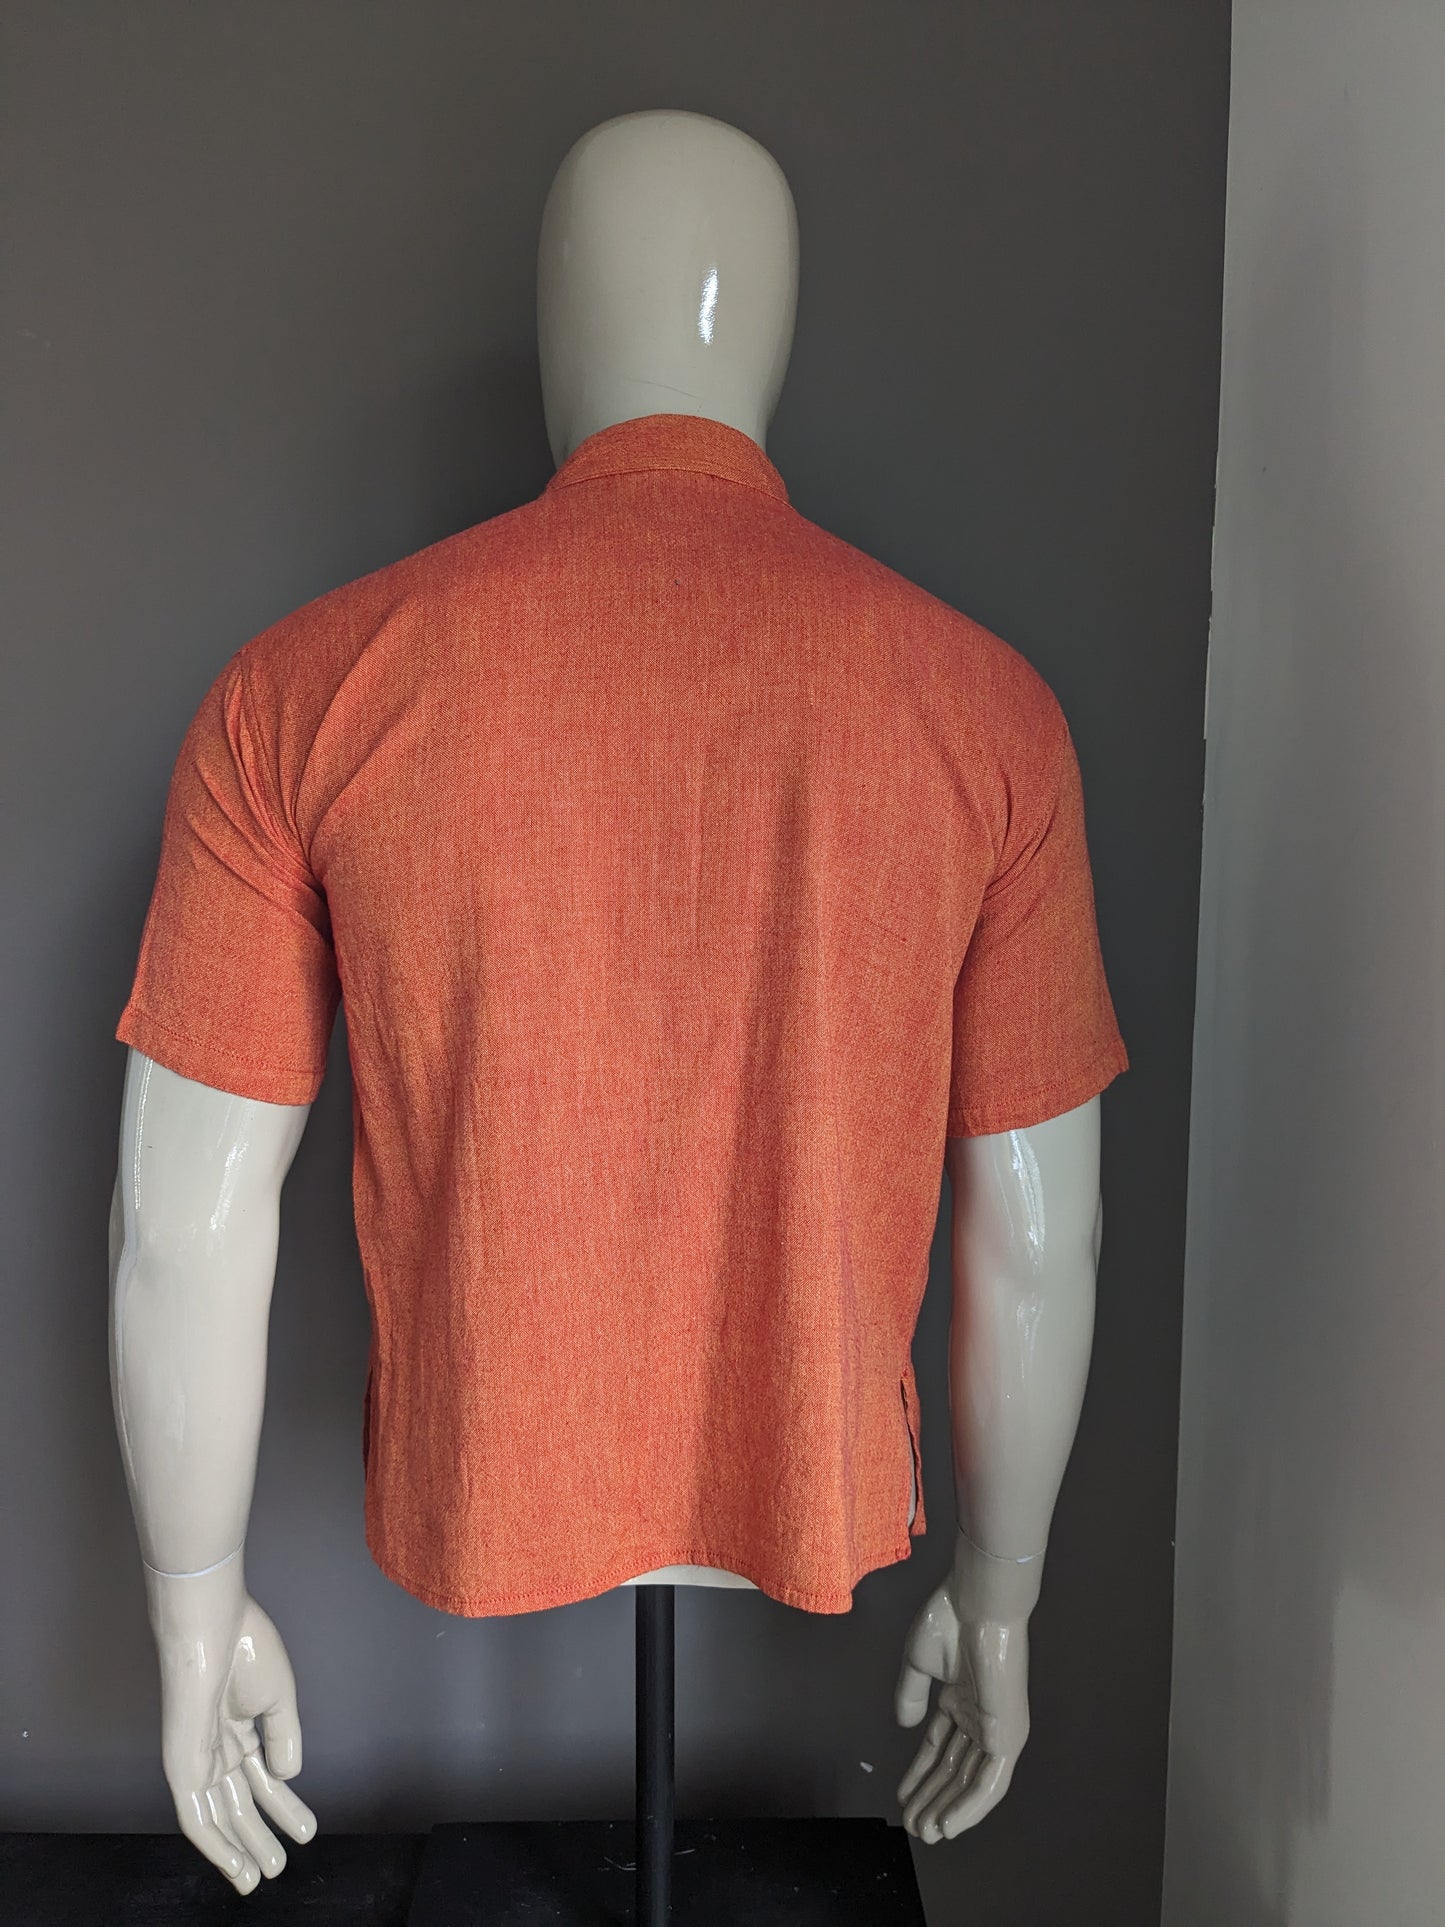 Le Grenier de Katmendou Camisa con Mao / Agricultores / Collar en pie. Red naranja mezclado. Talla L.